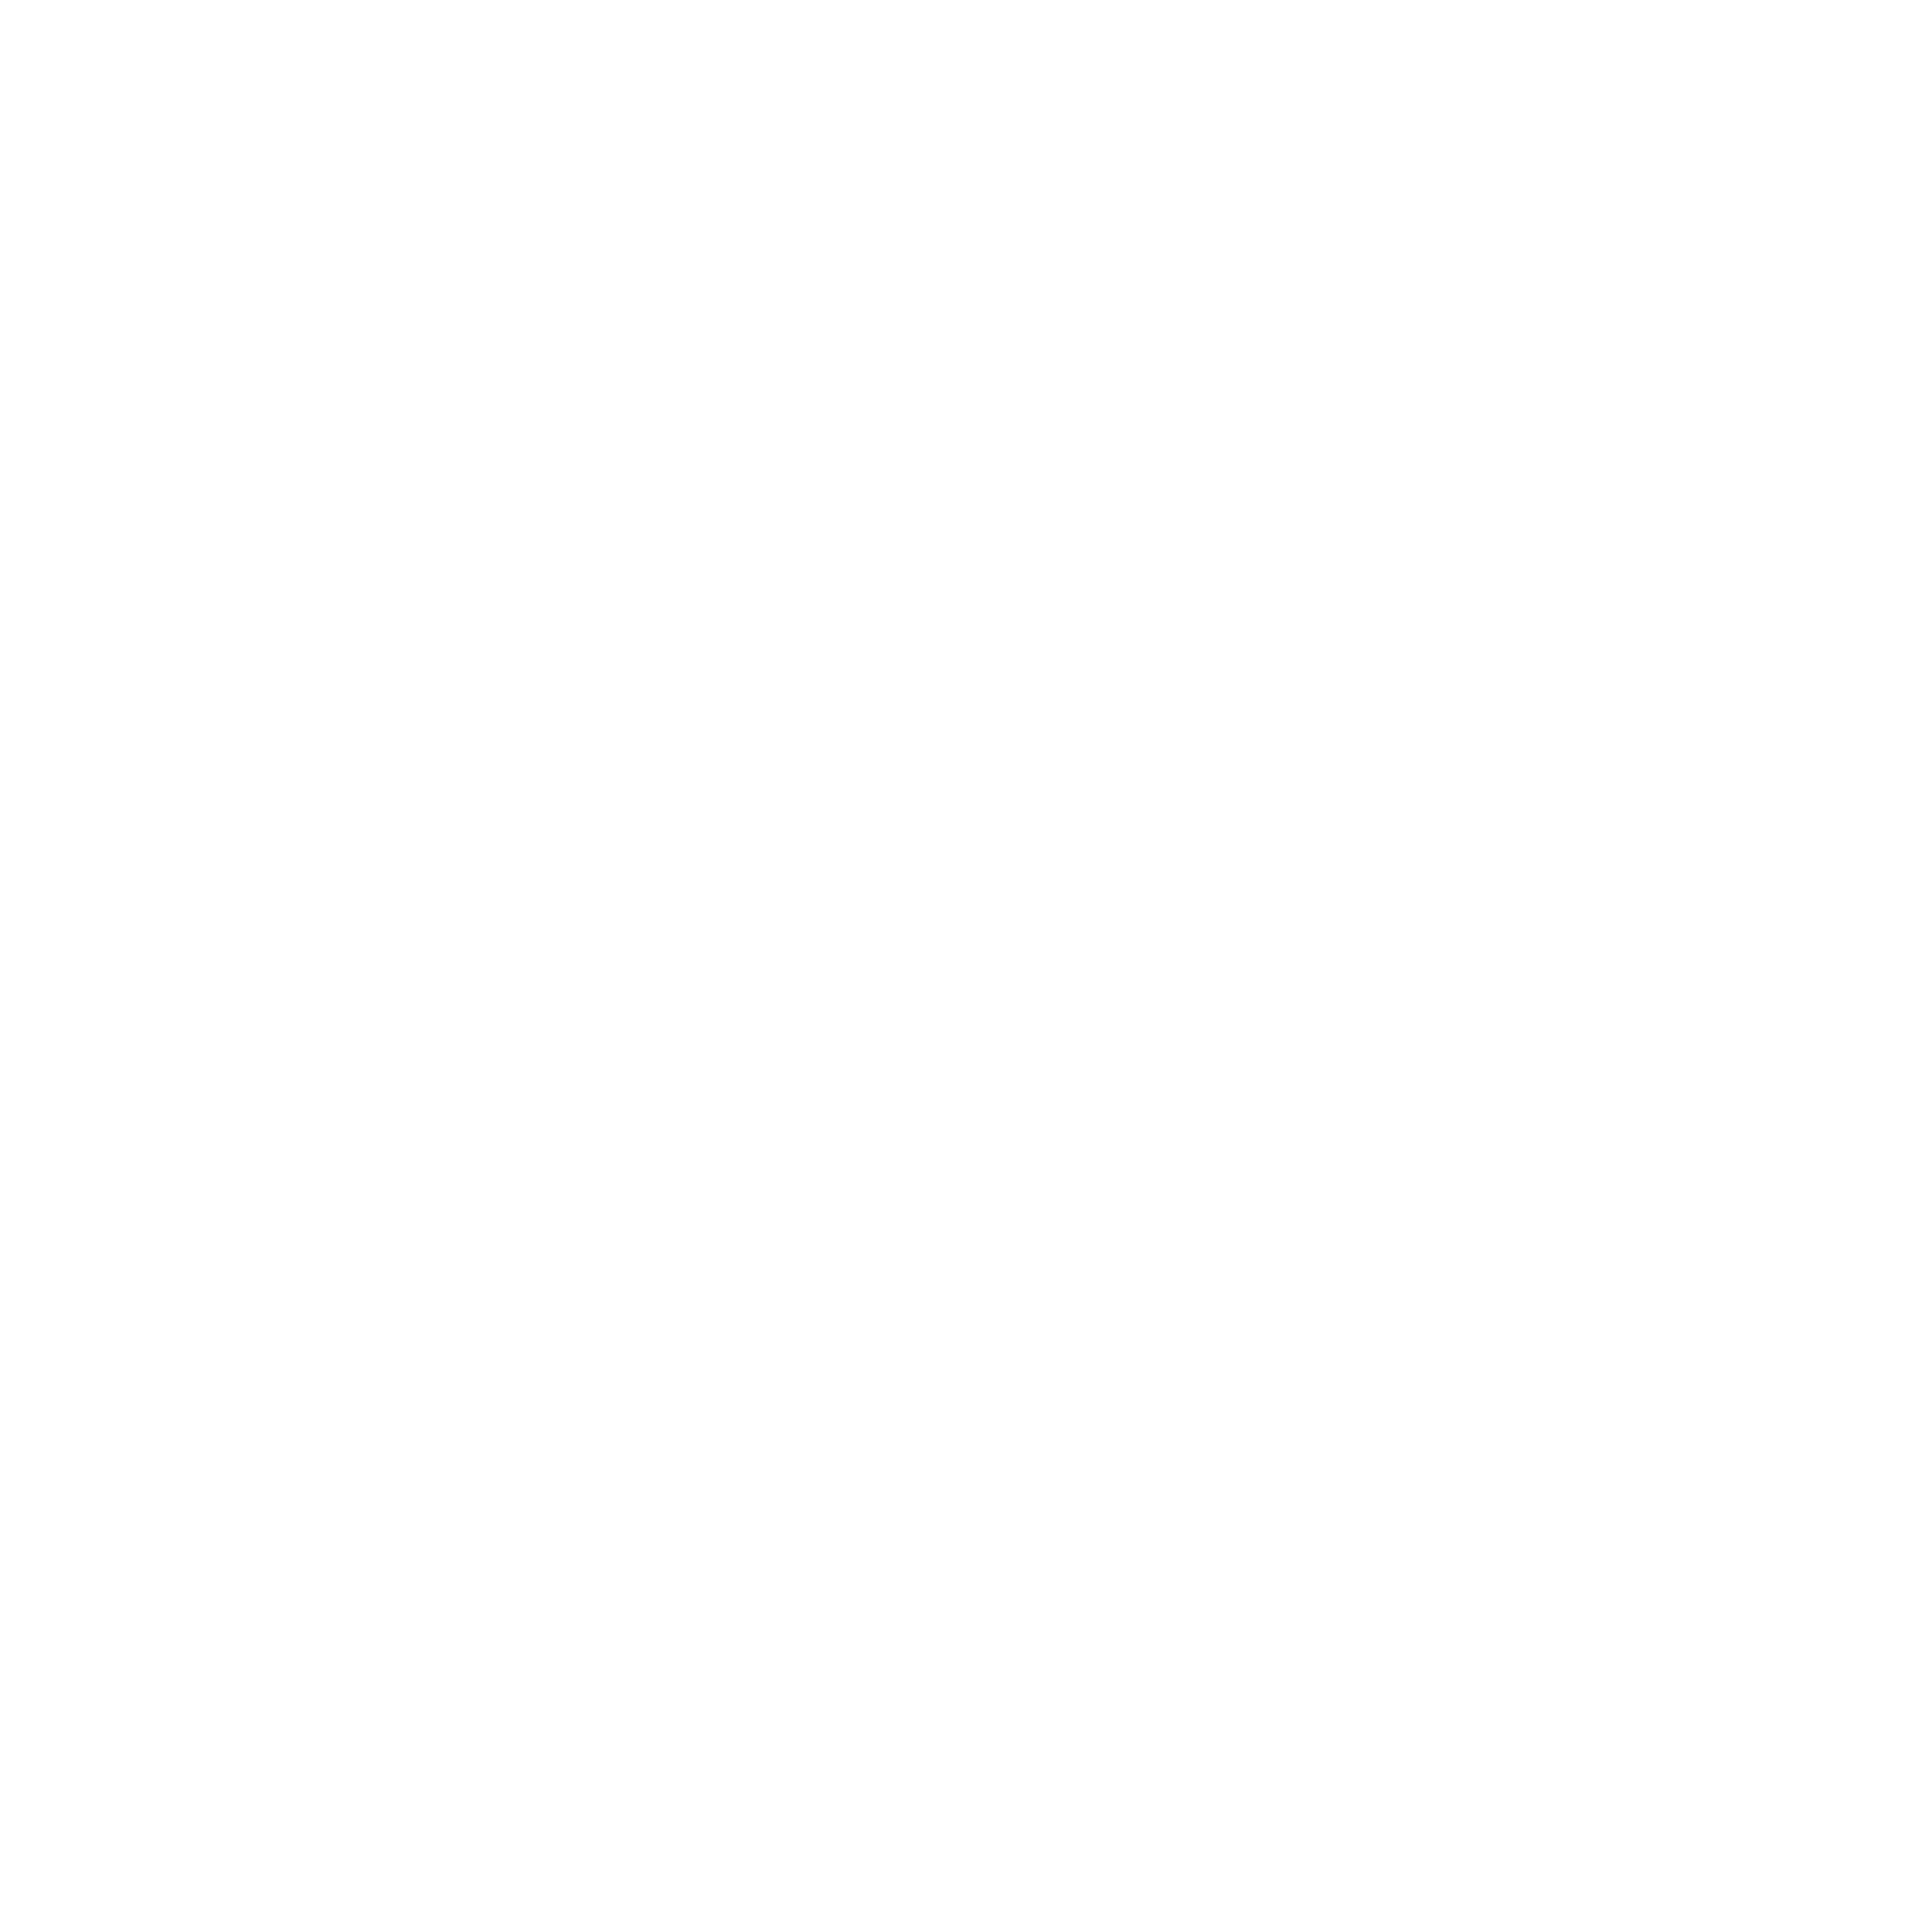 HungaryMe! logo